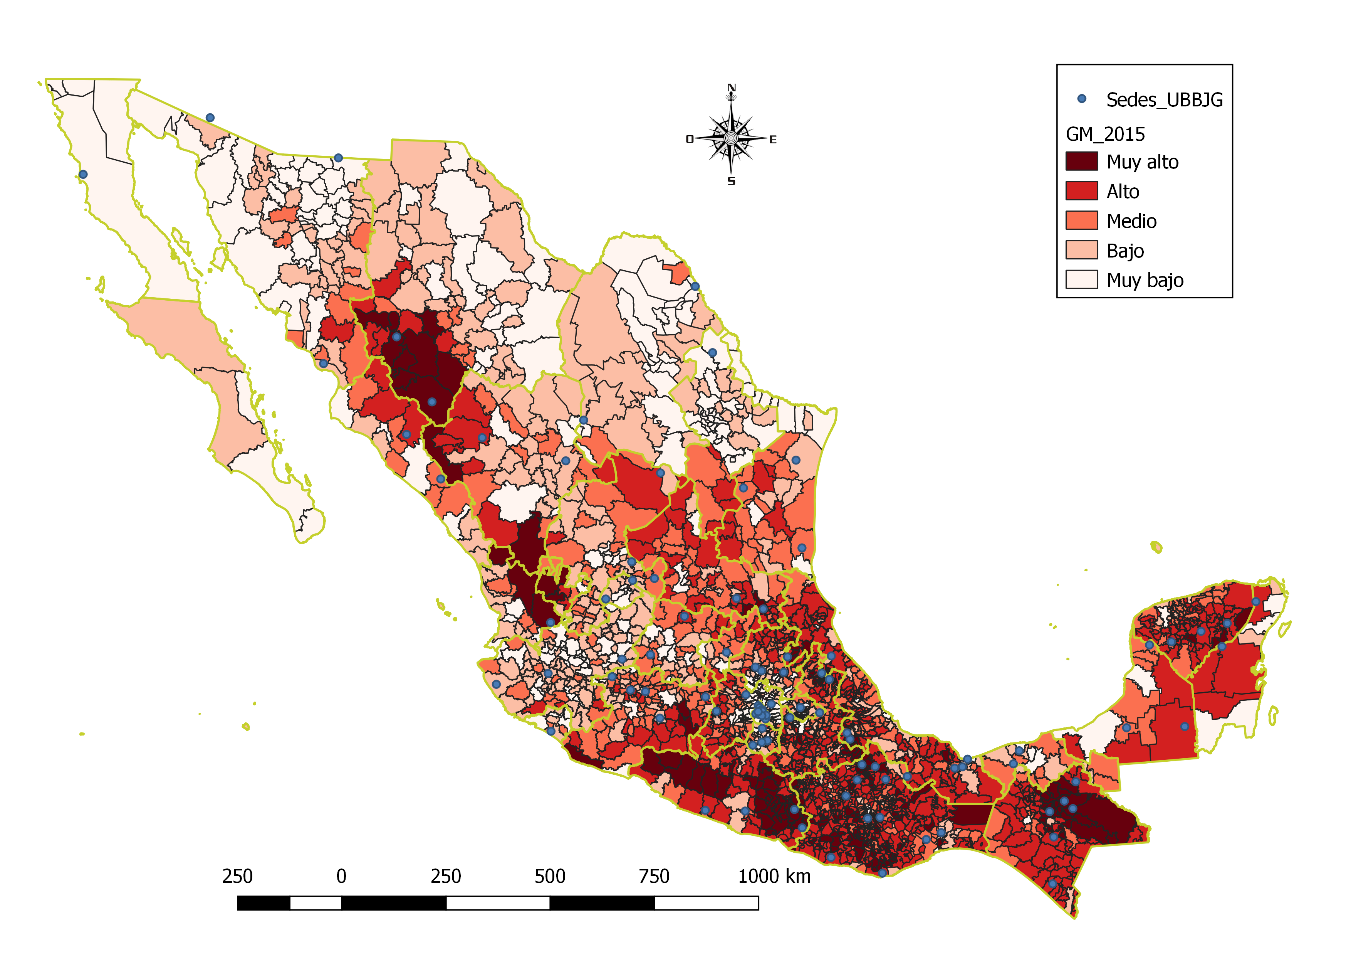 Figura 1. Grado de marginación de los municipios de la República Mexicana y ubicación de sedes de las UBBJG